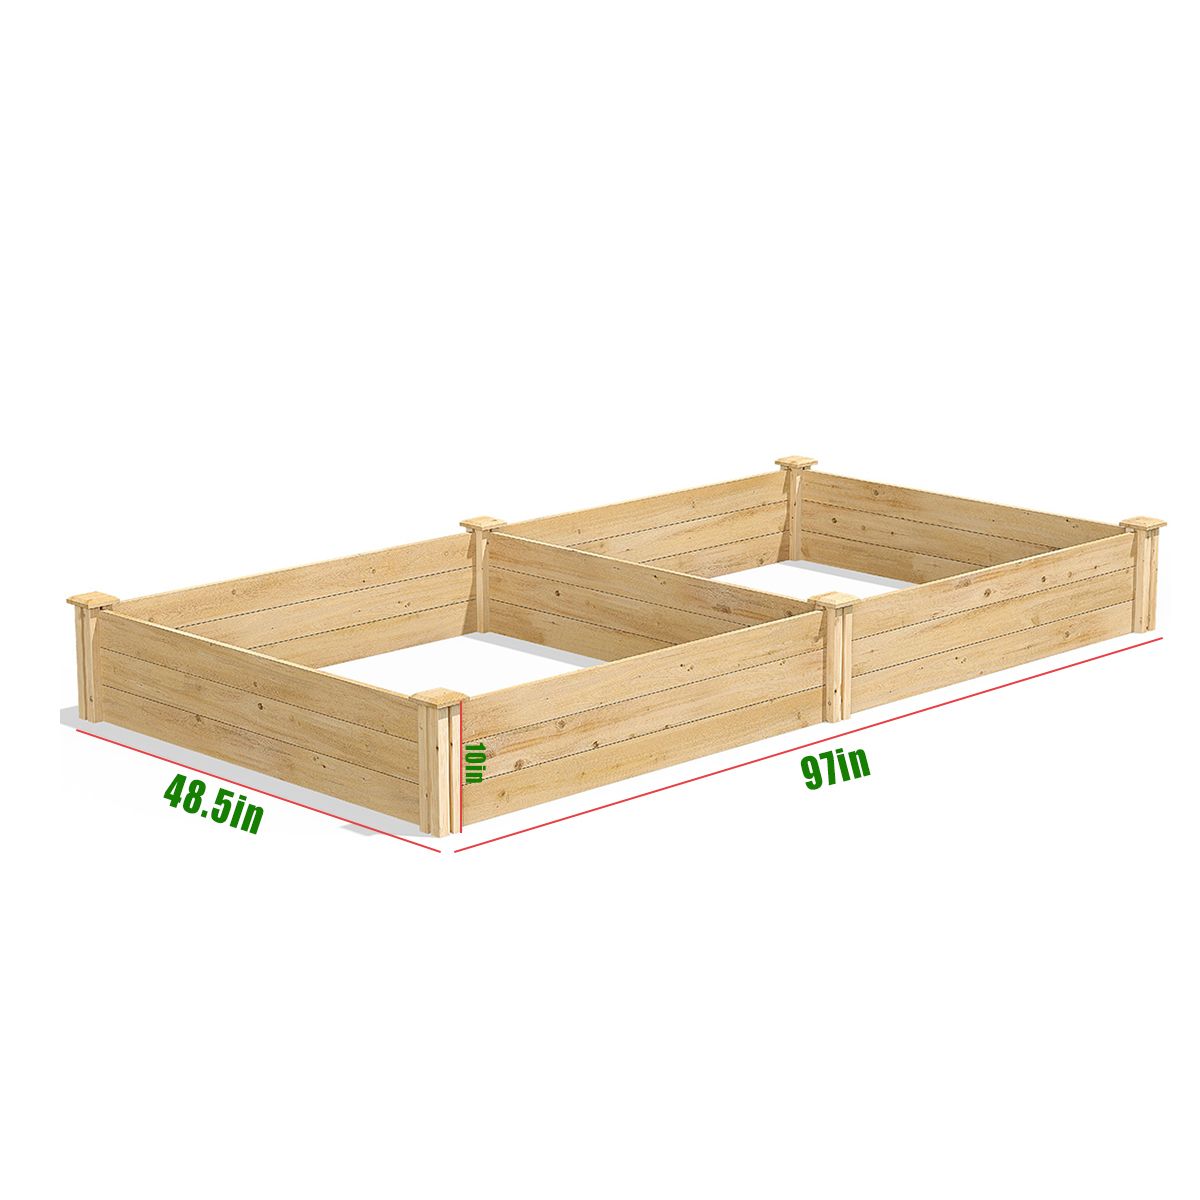 97x485x10-inch-Garden-Raised-Wooden-Bed-Outdoor-Garden-Plant-Flower-Planter-Pot-Kit-1702361